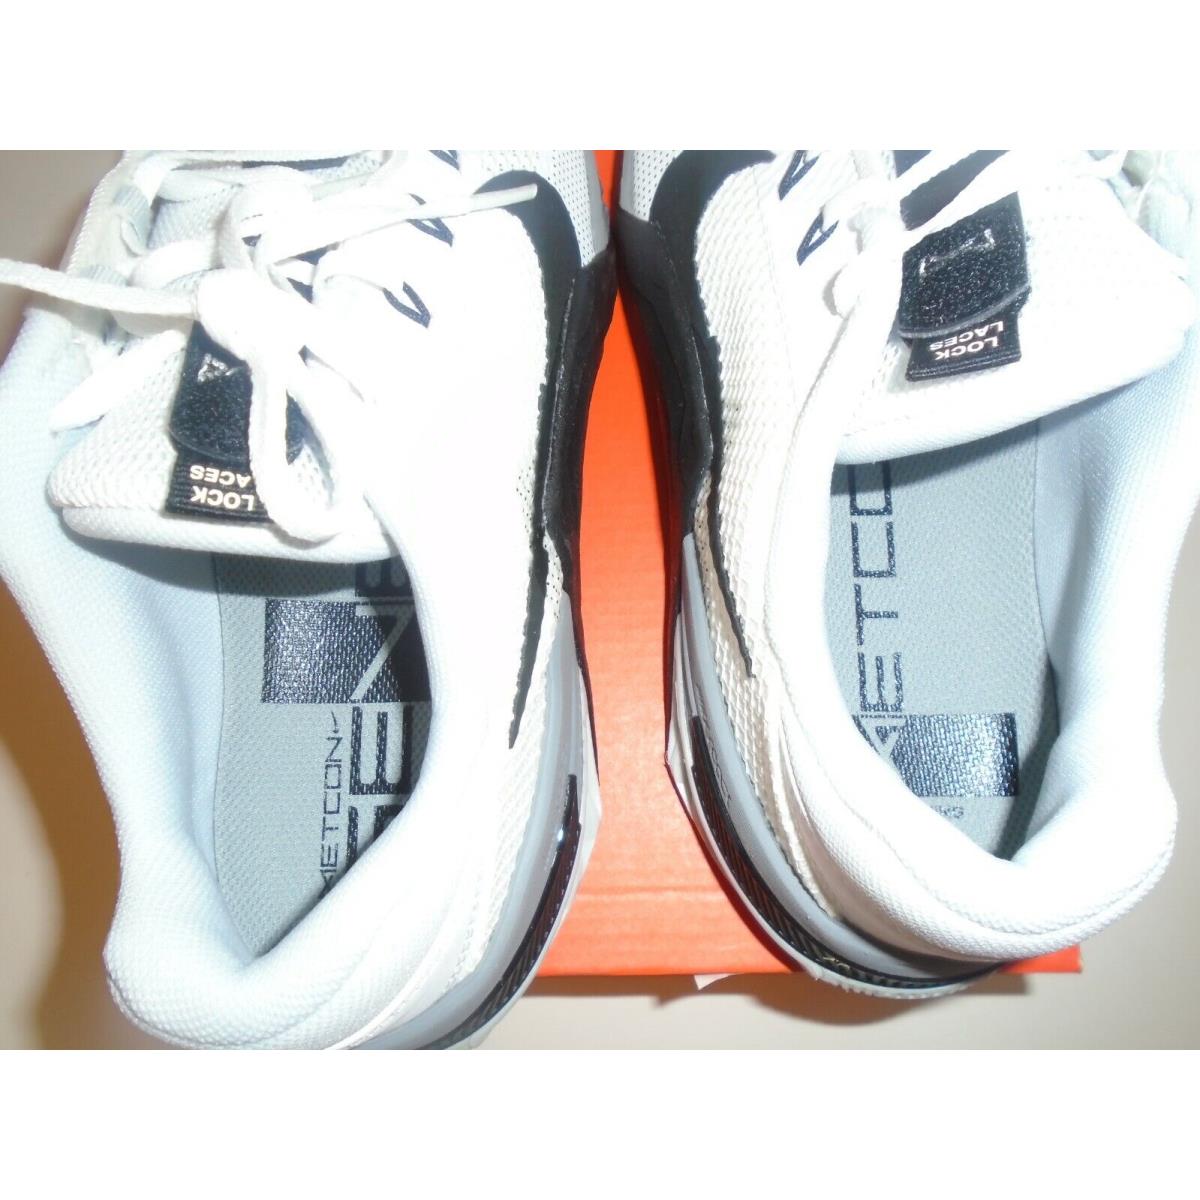 Nike shoes Metcon - White 1